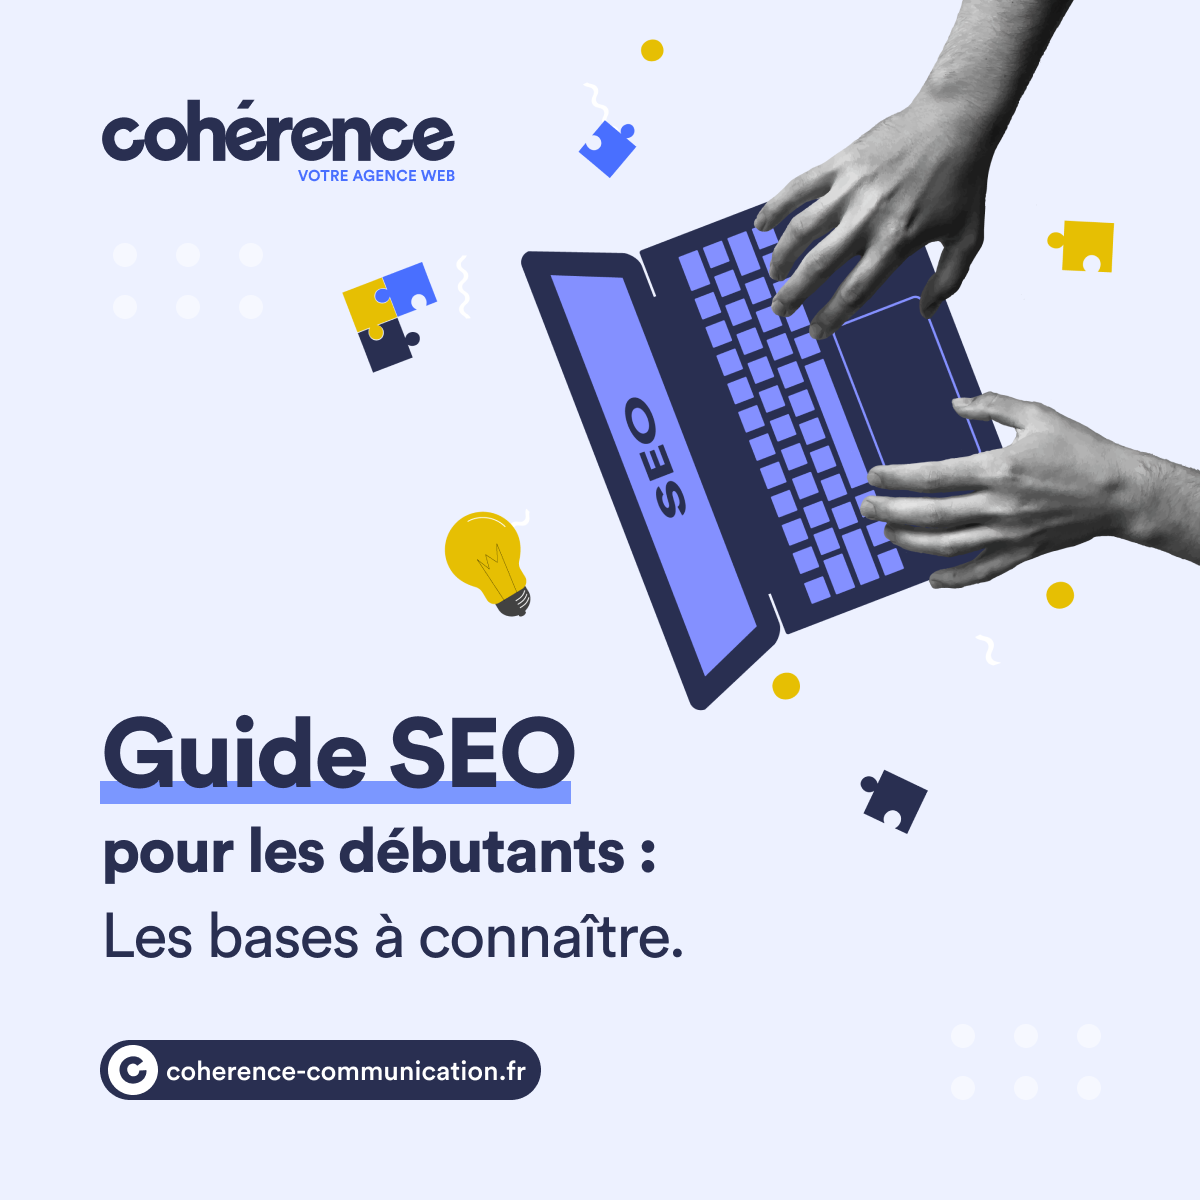 Coherence Agence Web A Rennes Guide SEO Pour Les Debutants Les Bases A Connaitre 2